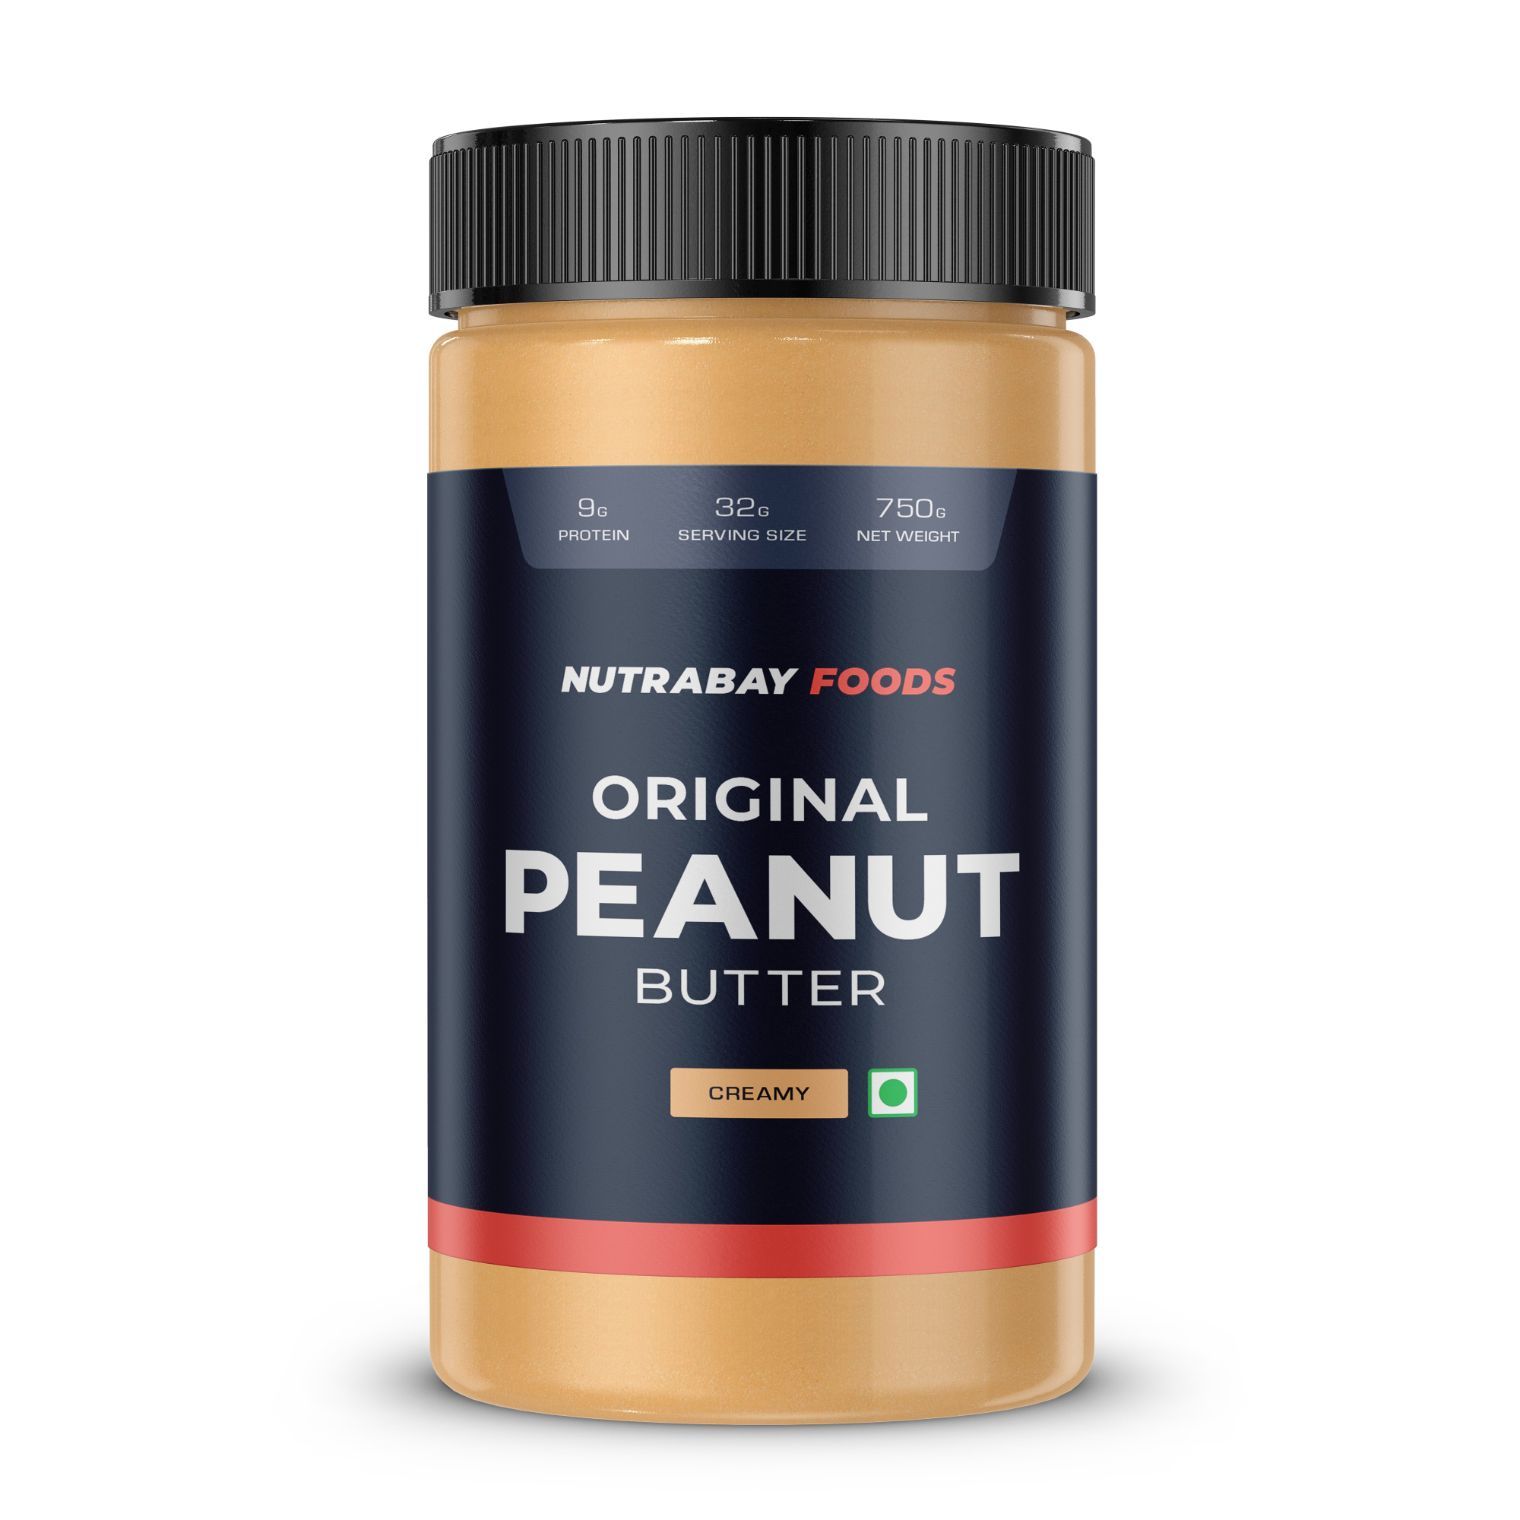 Nutrabay Foods Original Peanut Butter Image